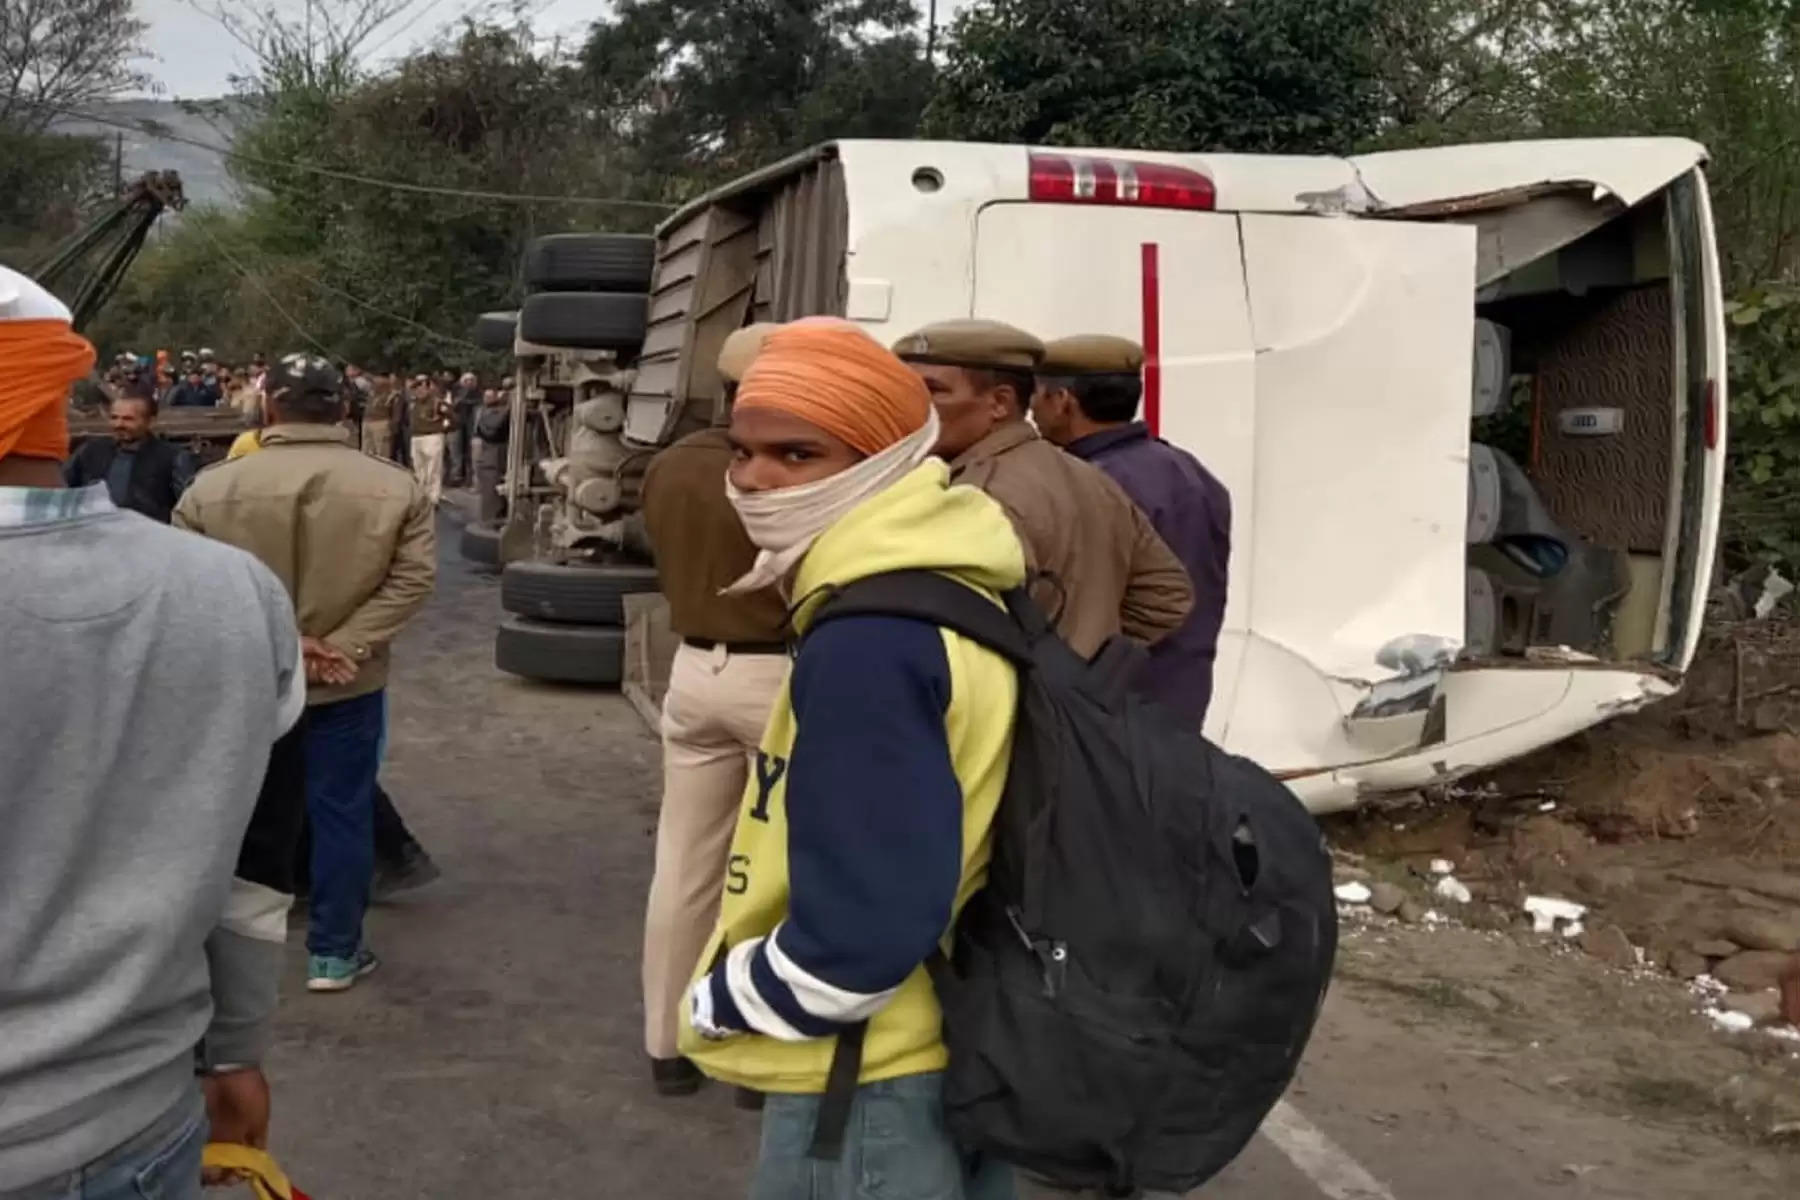 हिमाचल प्रदेश के बिलासपुर जिला (Tourist Bus Accident Bilaspur) में शुक्रवार सुबह एक टूरिस्ट बस हादसे का शिकार हो गई। हादसे में बस में सवार एक युवती की मौके पर मौत हो गई, जबकि 41 यात्री घायल हो गए। हादसा चंडीगढ़-मनाली राष्ट्रीय राजमार्ग (Chandigarh Manali NH) पर जबली के समीप कुनाला में हुआ है। बताया जा रहा है कि यह बस पर्यटकों को लेकर मनाली जा रही थी, इसी दौरान हादसे का शिकार हो गई। 